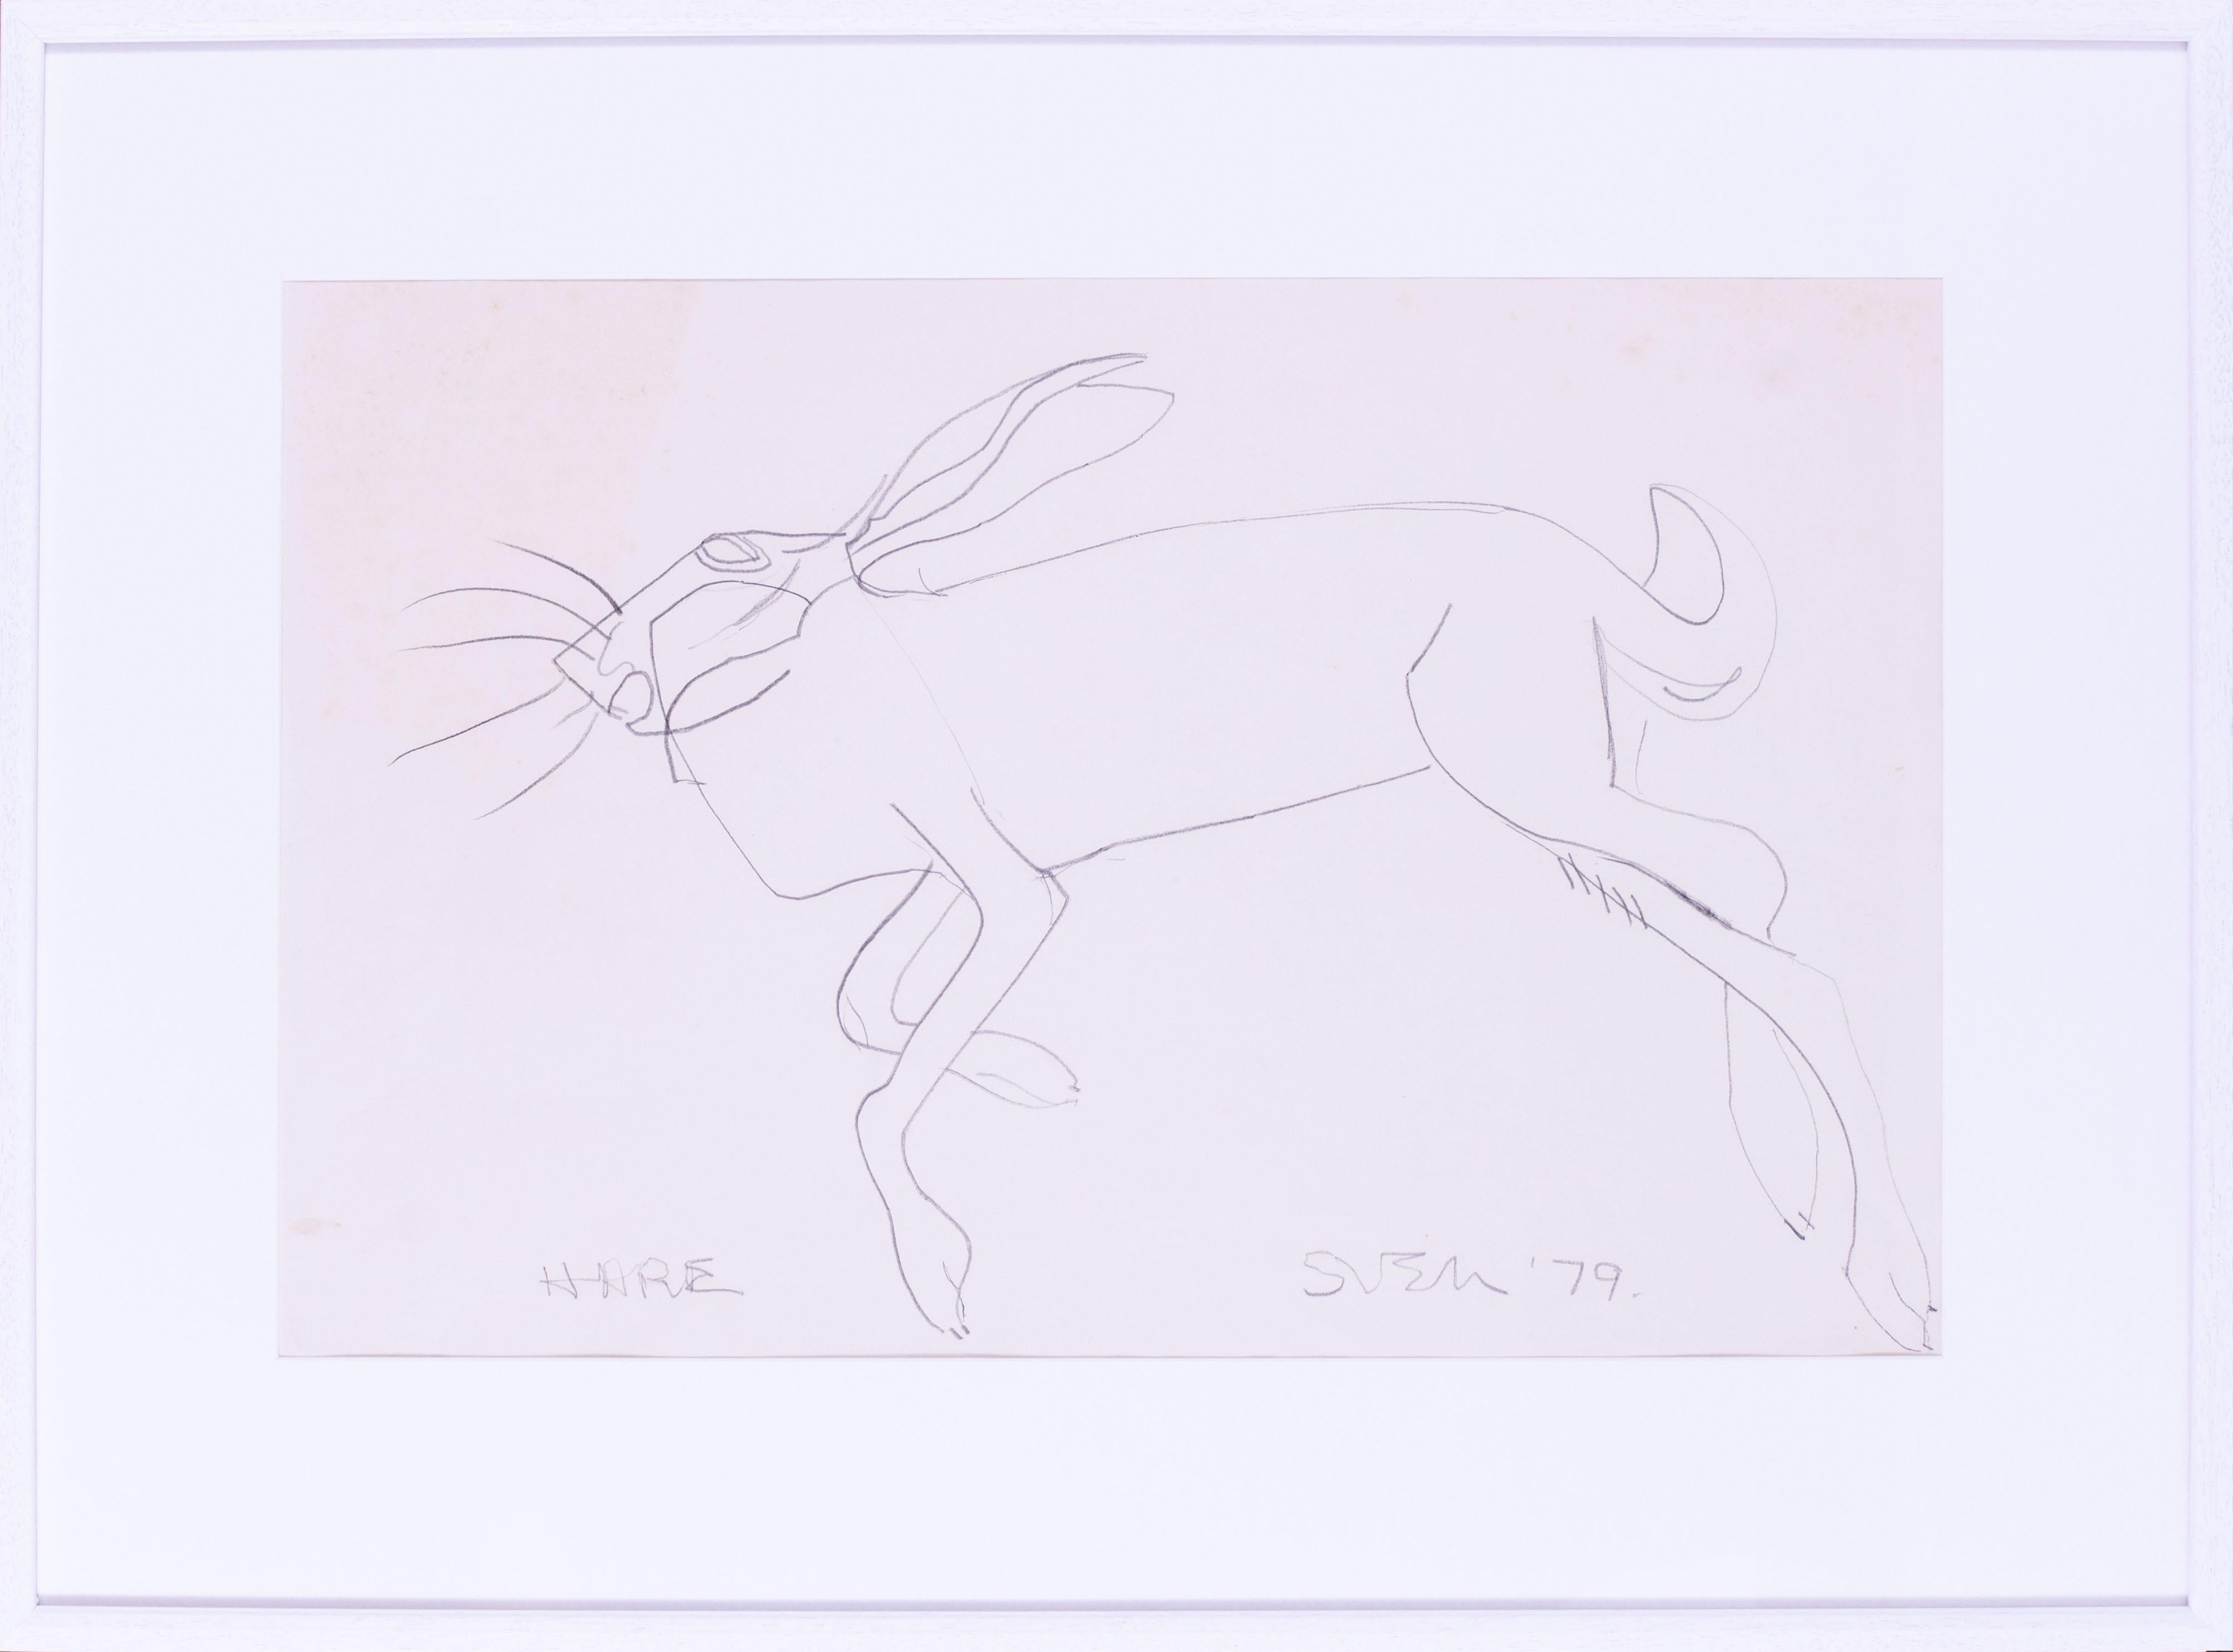 Sven Berlin, Knstler aus Cornwall, St. Ives, Zeichnung eines Kaninchens